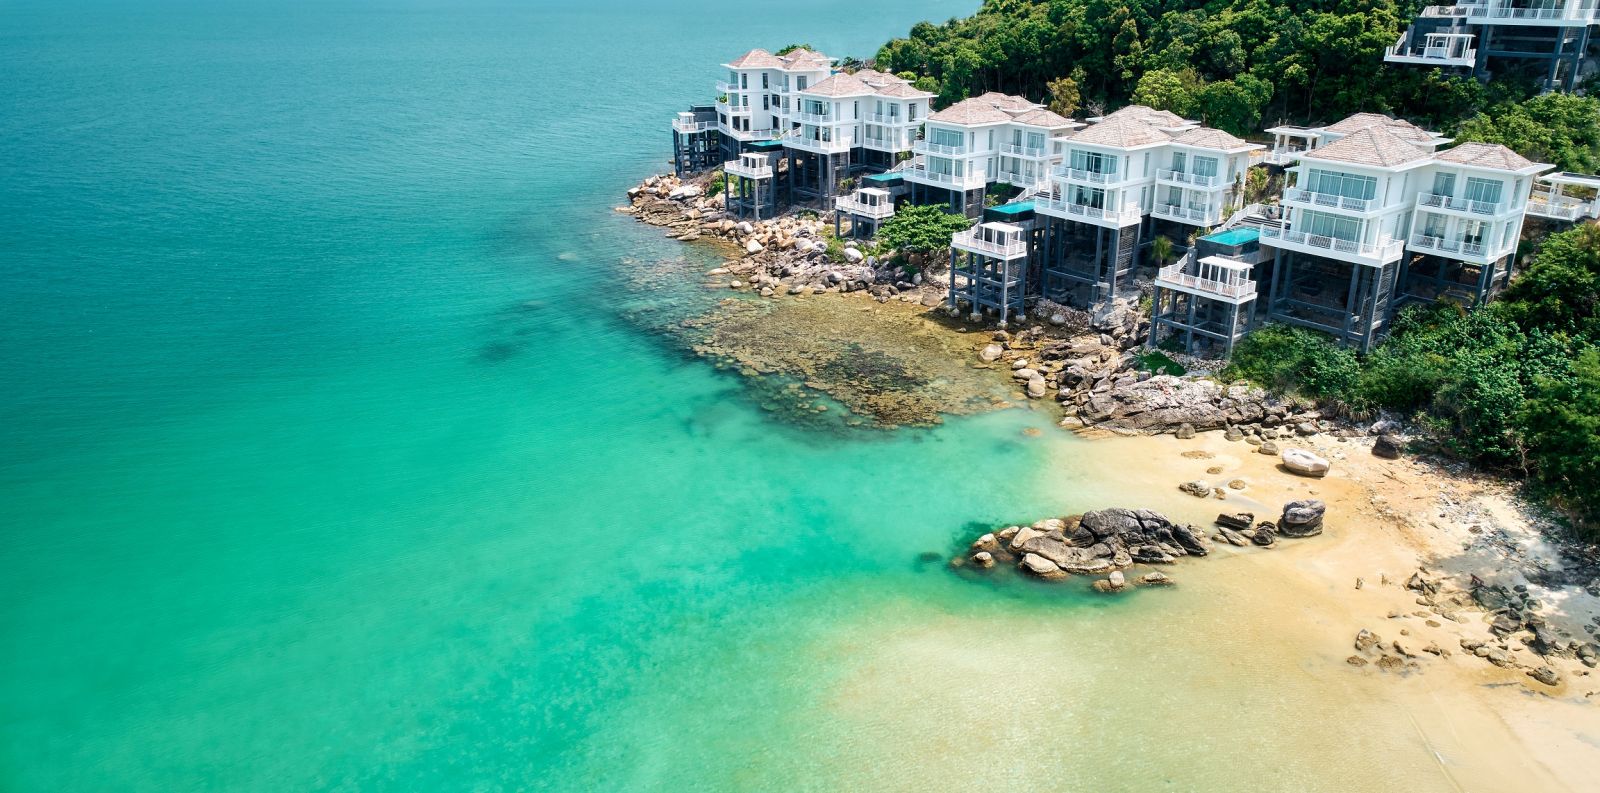 Khu nghỉ dưỡng siêu sang hai mặt biển Premier Village Phu Quoc Resort ở Mũi Ông Đội.